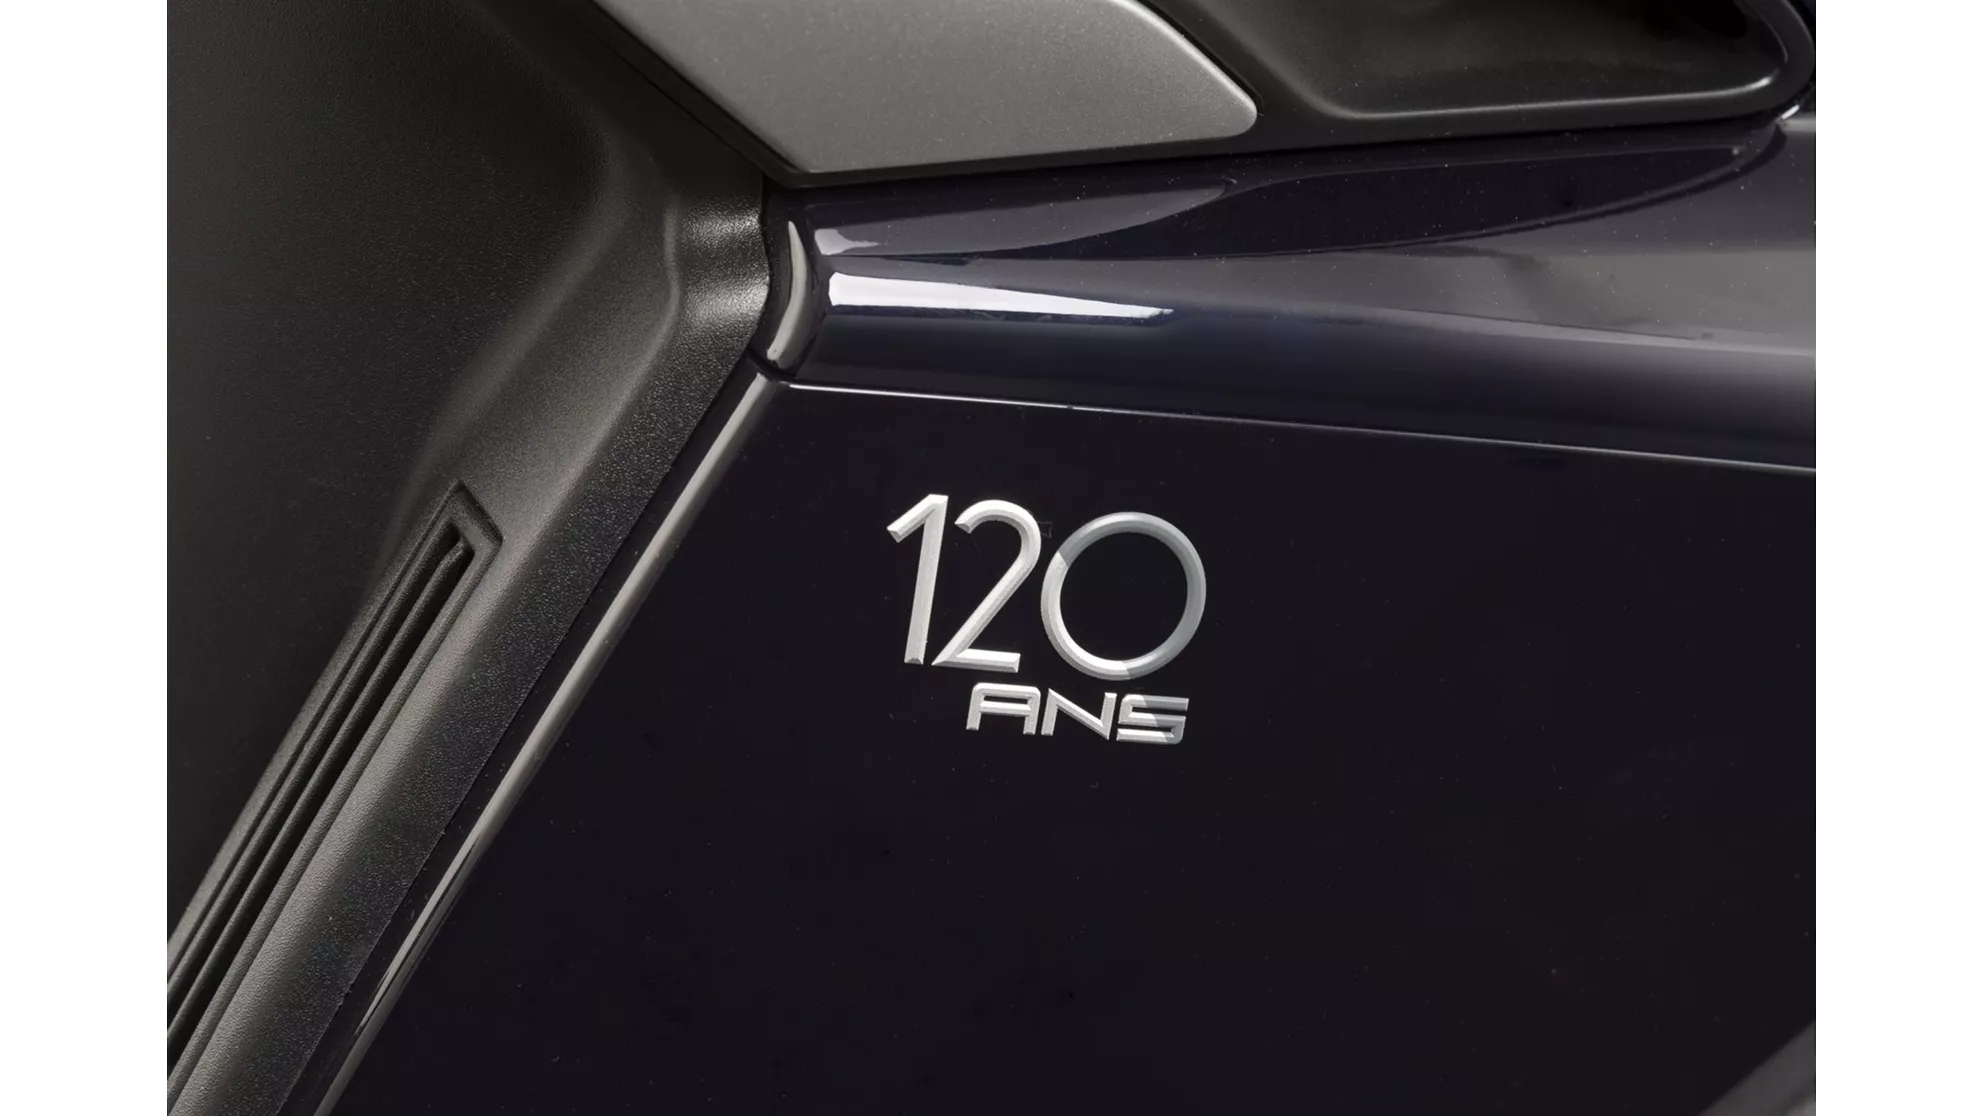 Peugeot Metropolis 120 ans - Kép 1